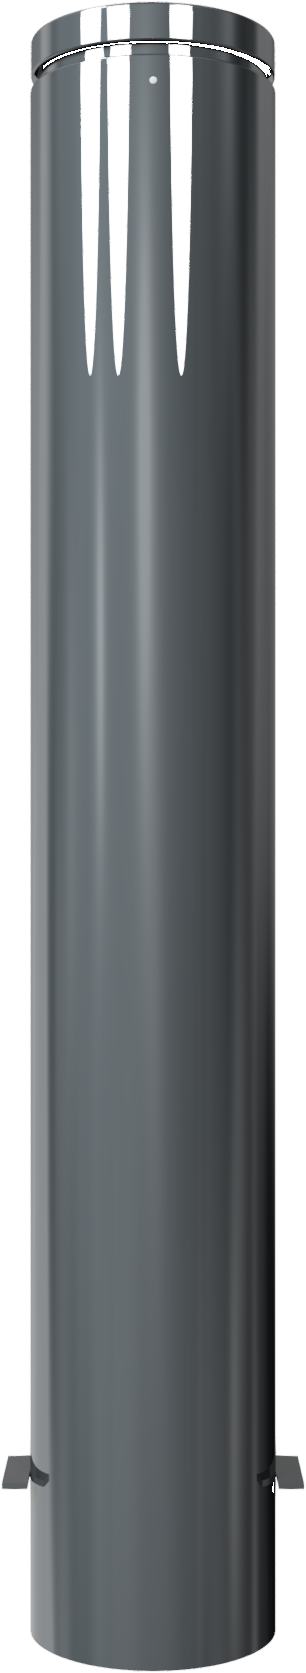 Modellbeispiel: Stilpoller Ø 193 mm mit Ziernut (Art. 40195b)